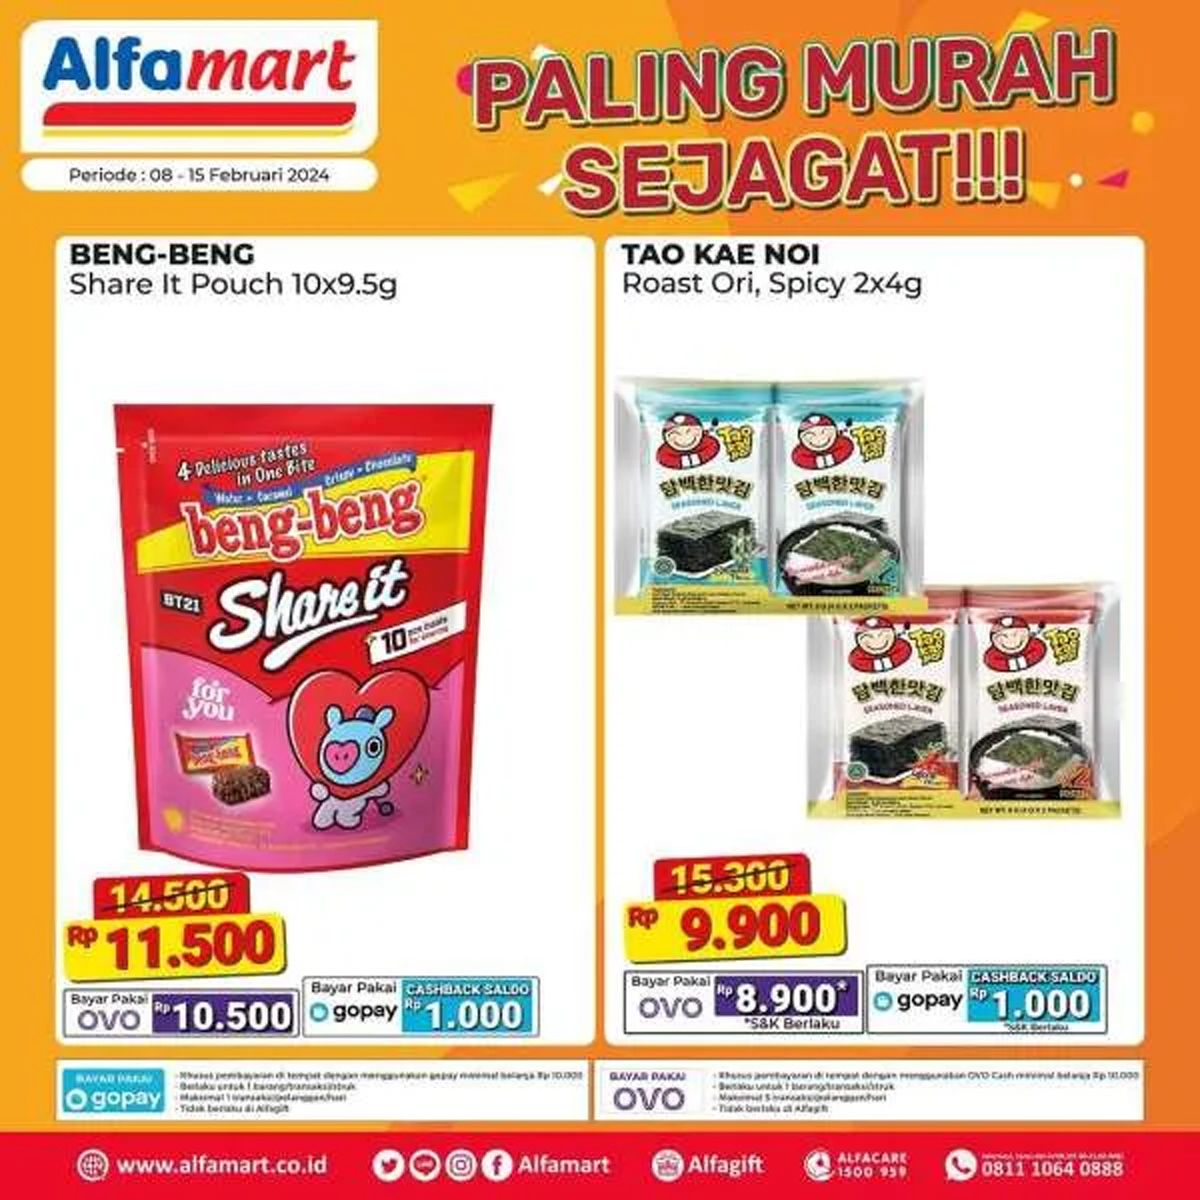  Katalog 3 produk yang dijual dalam program promo Alfamart Paling Murah Sejagat periode 8 - 15 Februari 2024./Instagram Alfamart.